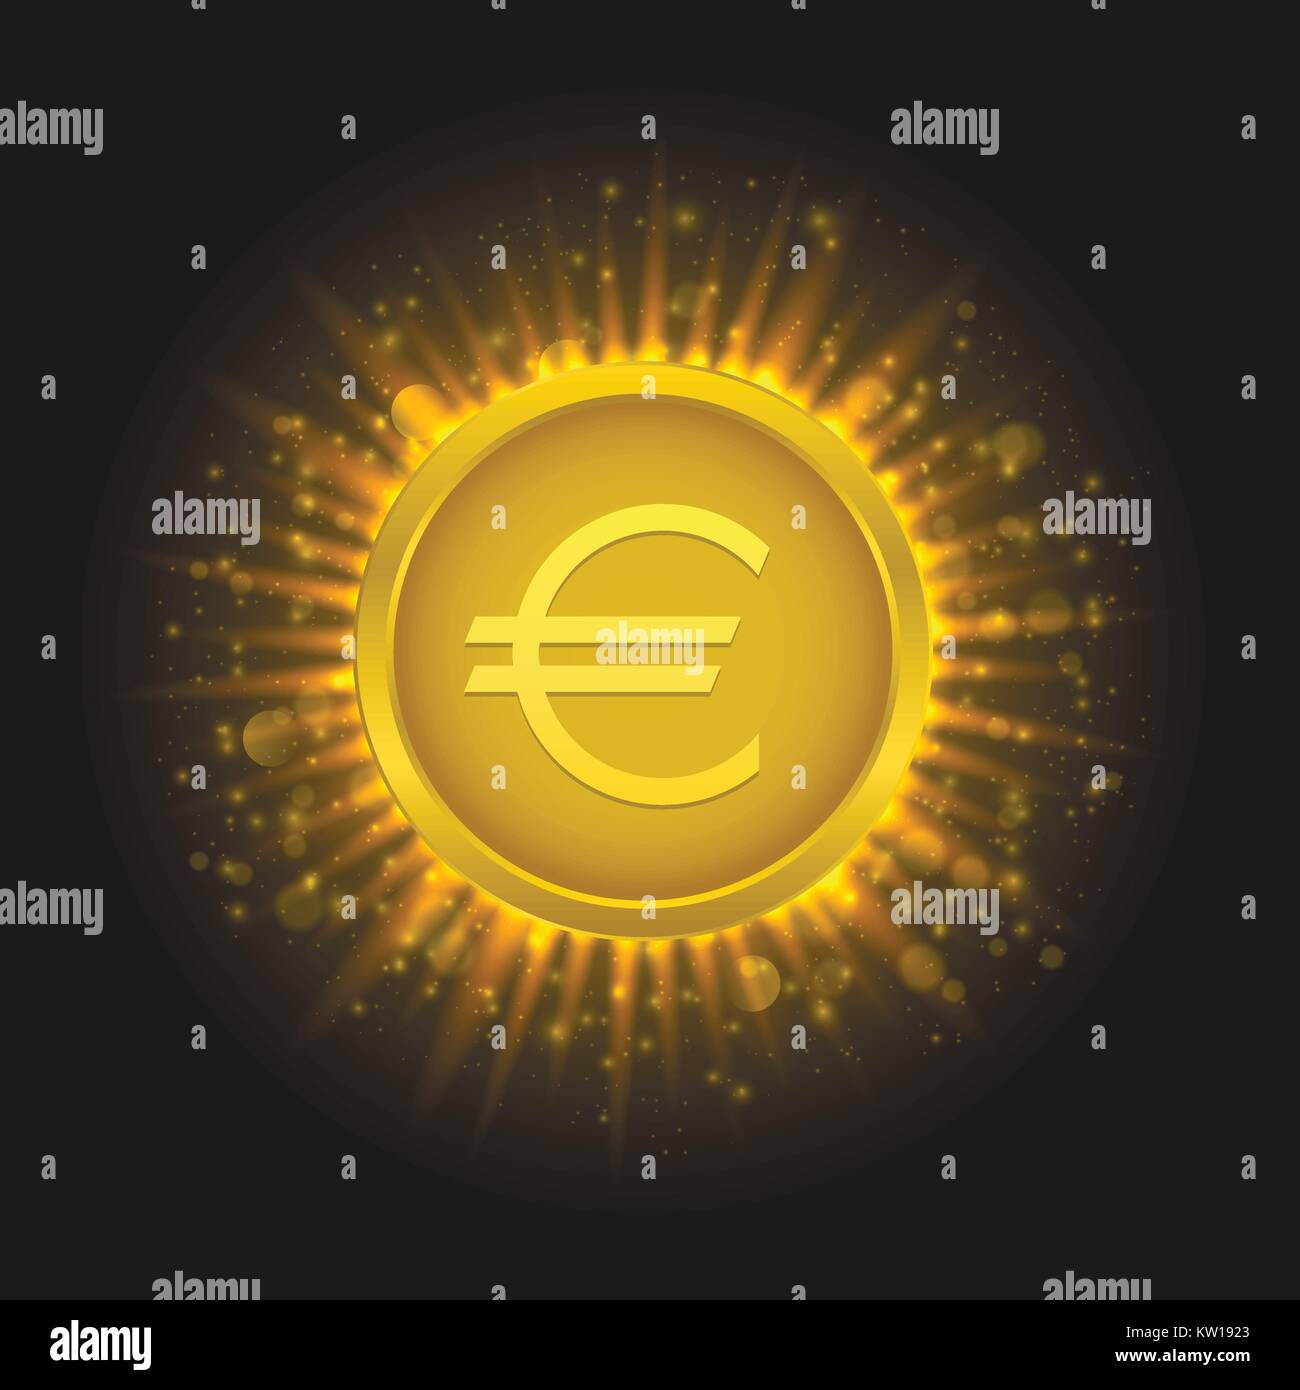 Golden euro coin3 Stock Vector